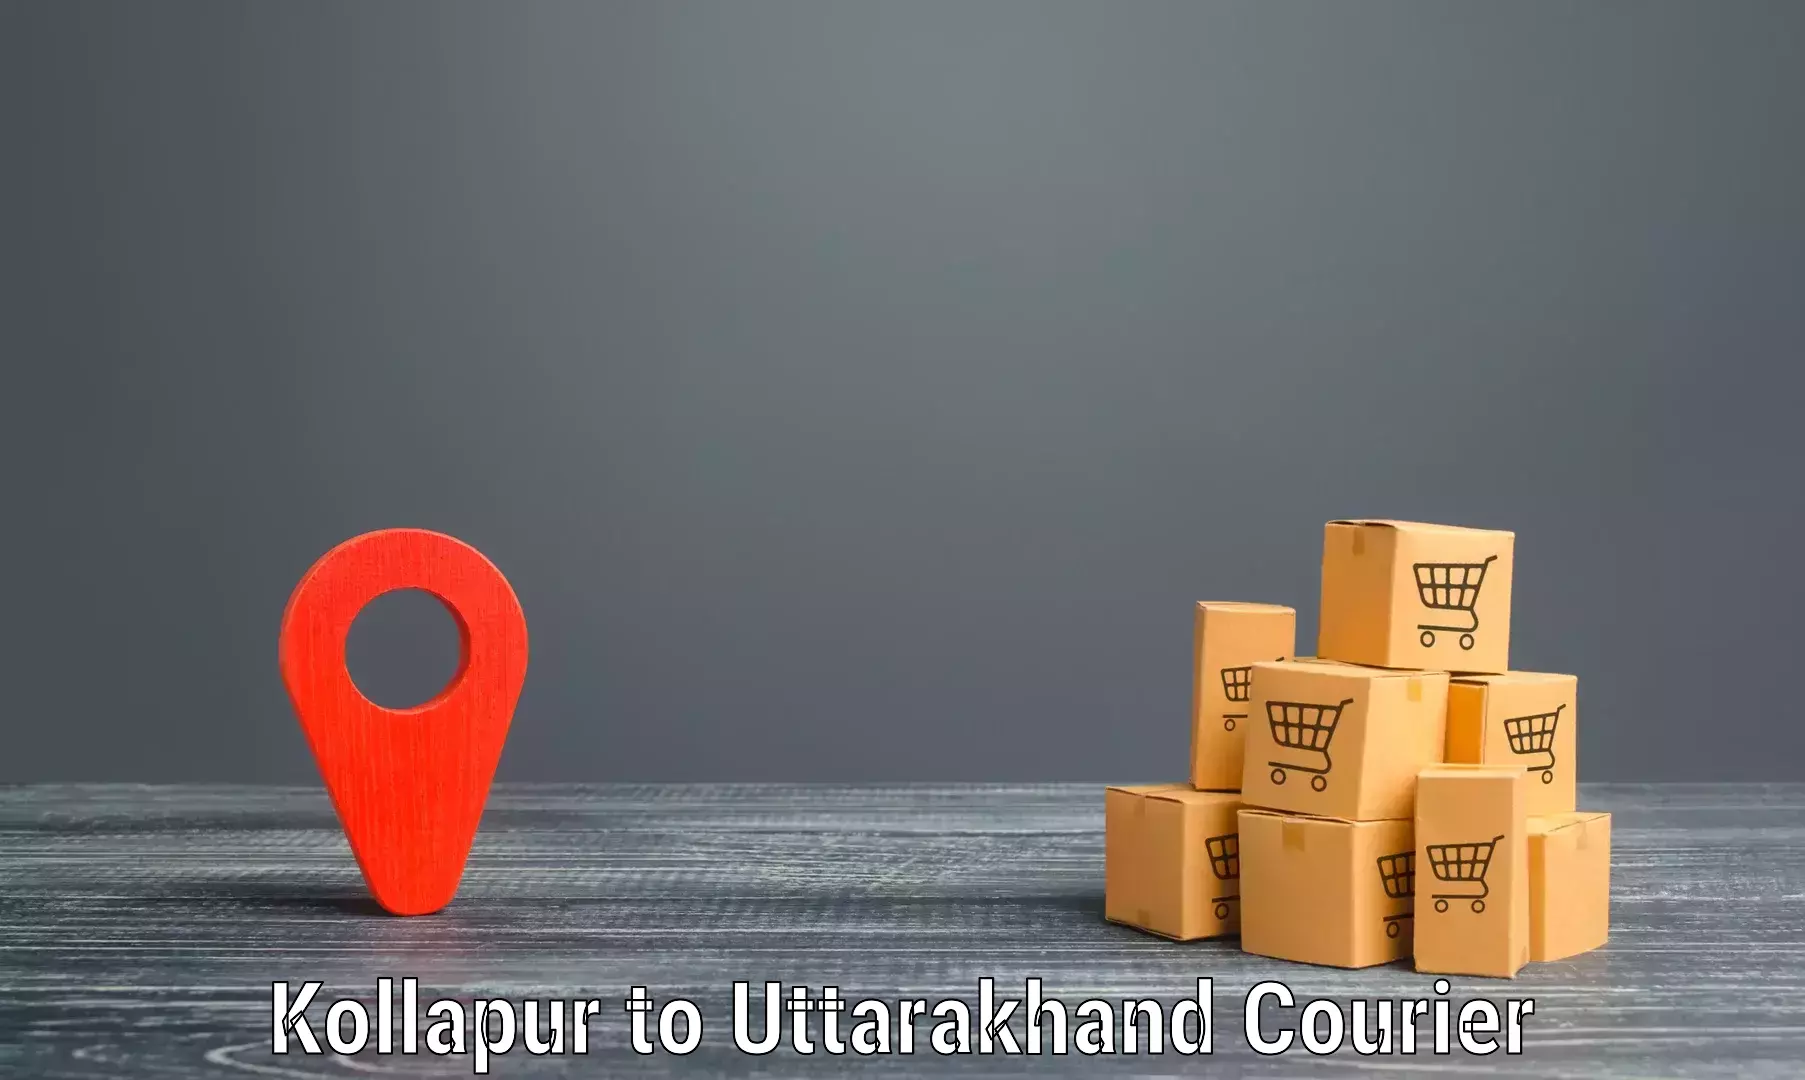 On-demand shipping options Kollapur to Doiwala